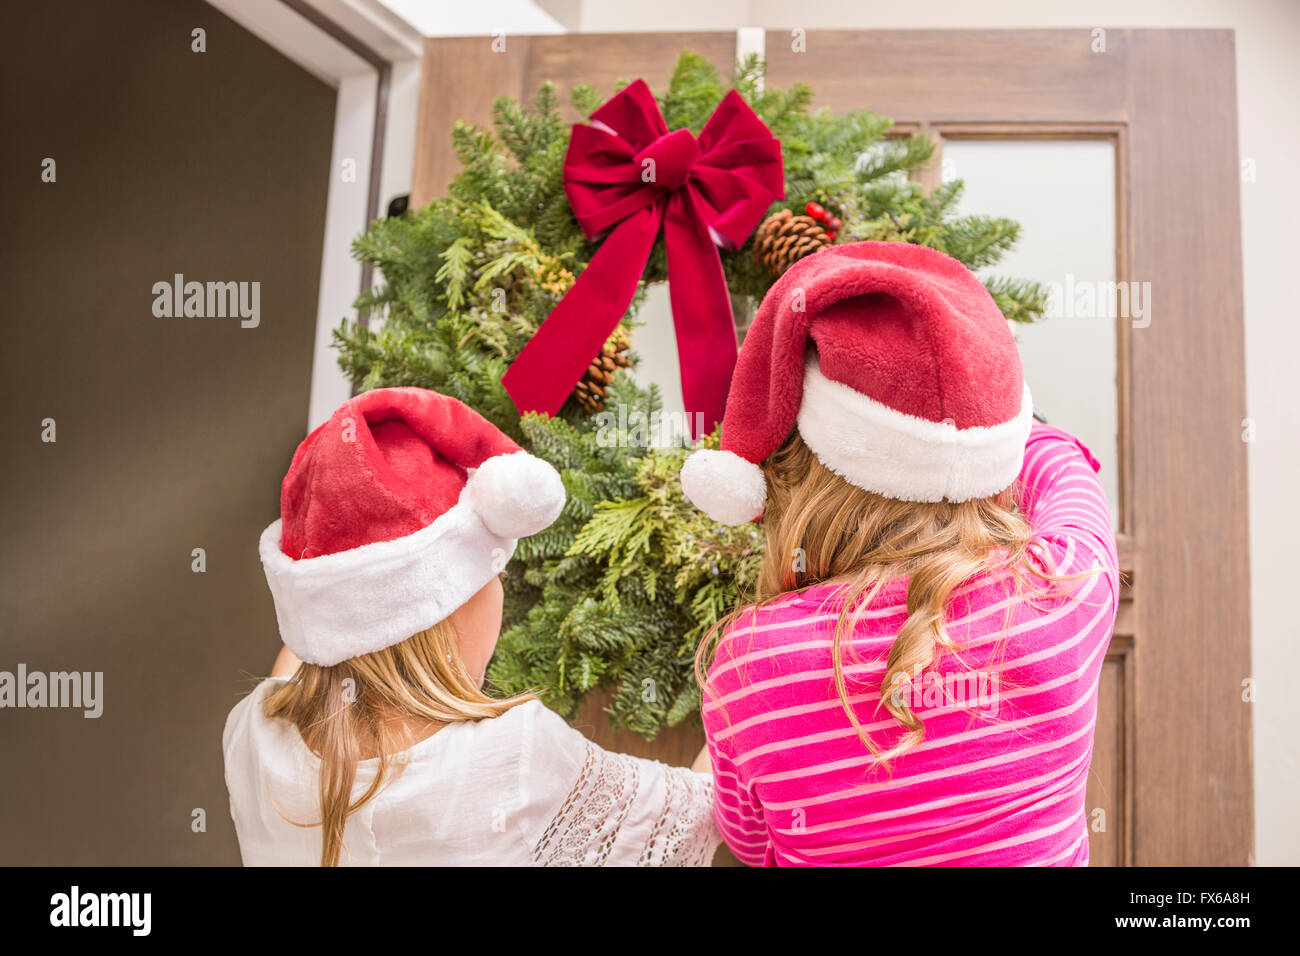 Caucasian girls hanging Christmas wreath Stock Photo